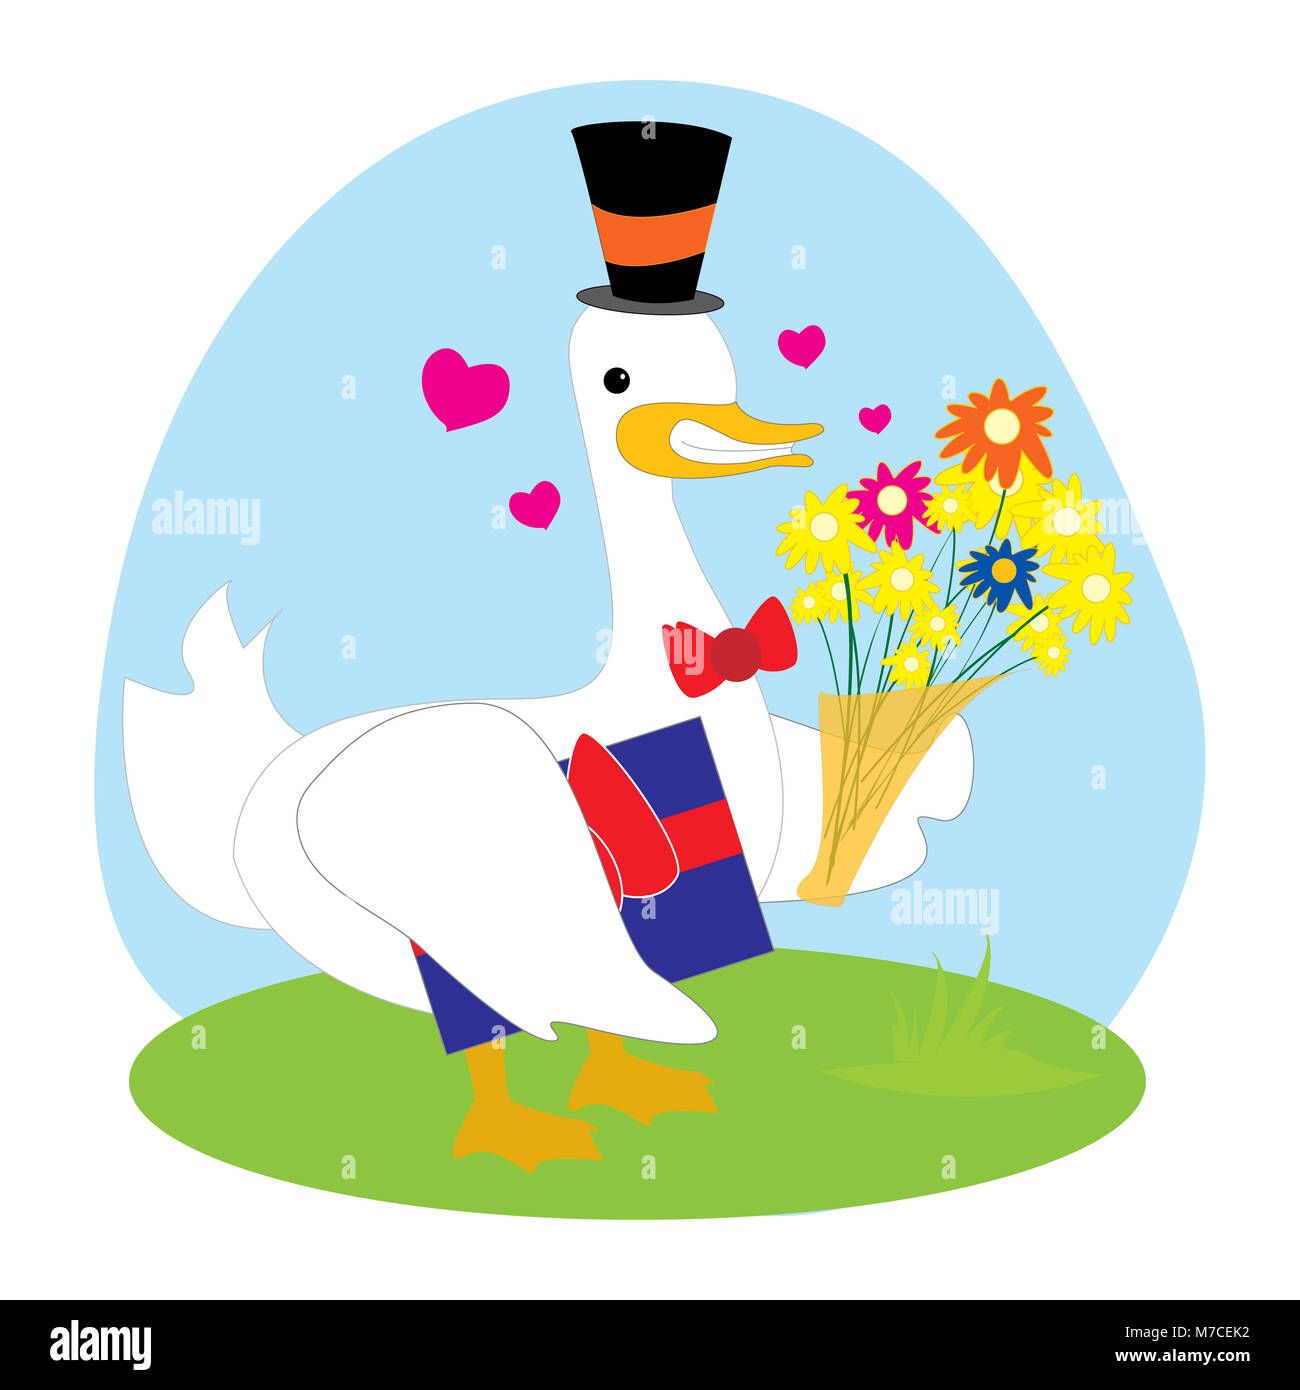 https://c8.alamy.com/comp/M7CEK2/duck-holding-a-gift-and-a-bouquet-M7CEK2.jpg